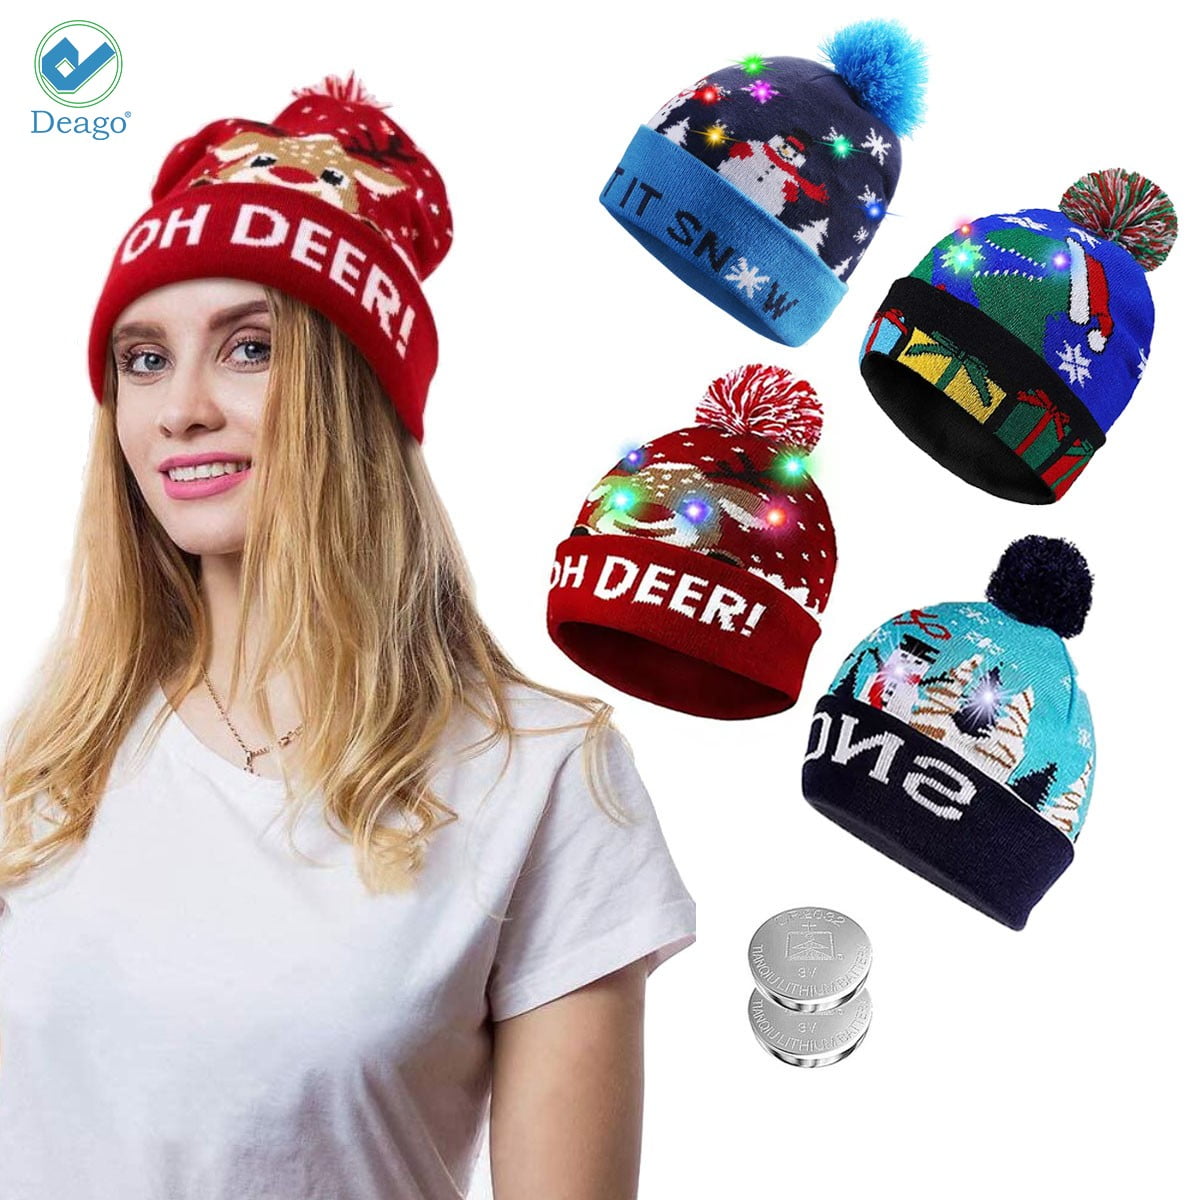 Unisex LED Beanie Hat Knit Light Up Ski Cap Christmas Gift For Women Men Child 